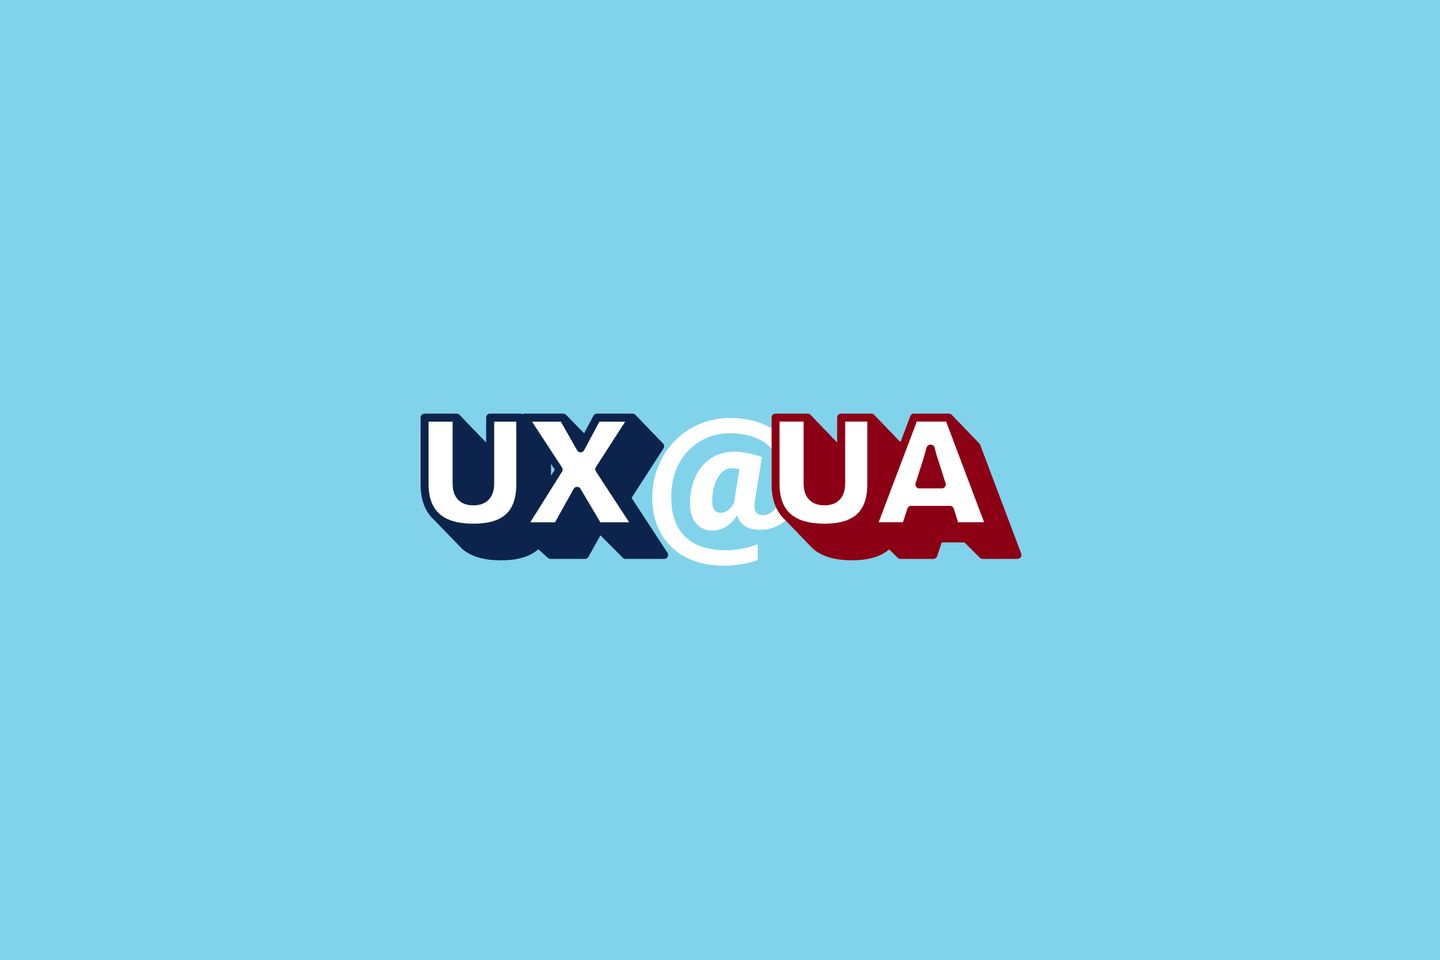 UX@UA standard logo